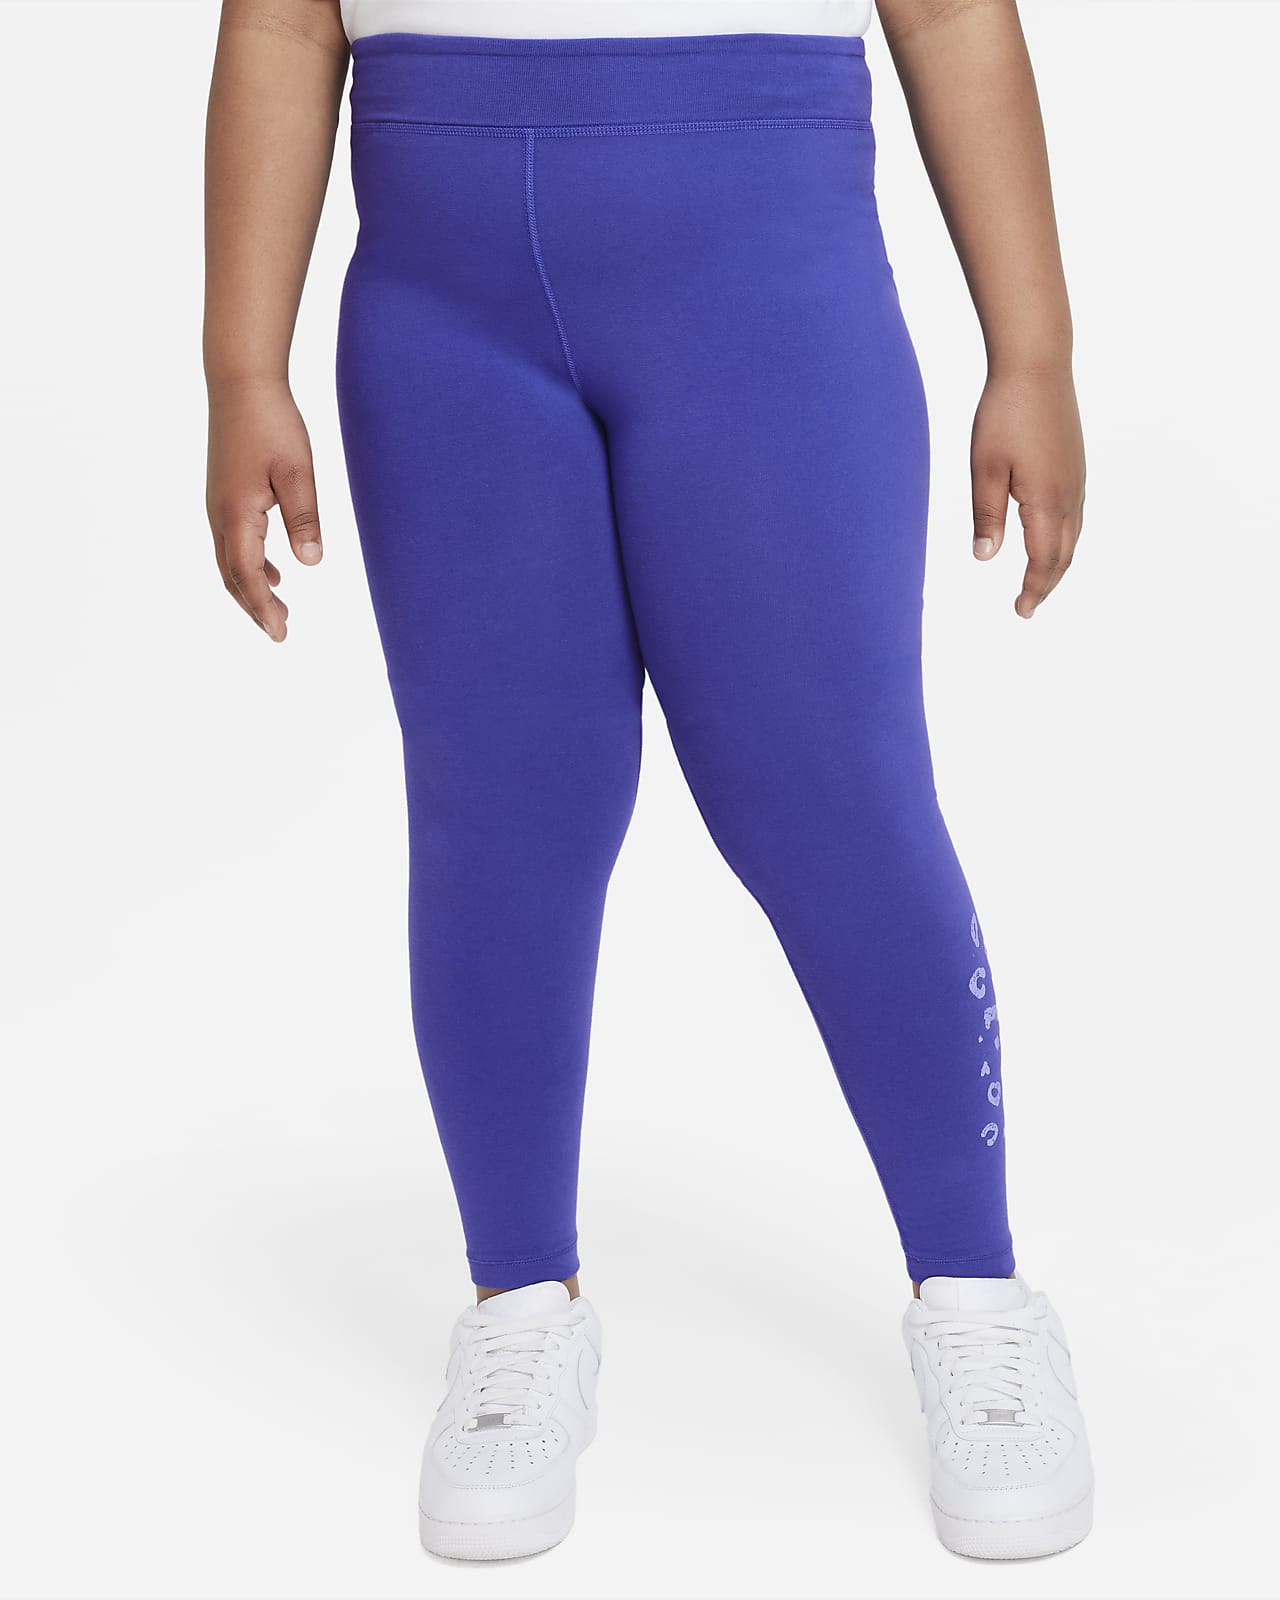 Nike Sportswear Icon Clash Essential Leggings mit mittelhohem Bund für ältere Kinder (Mädchen) (erweiterte Größe)